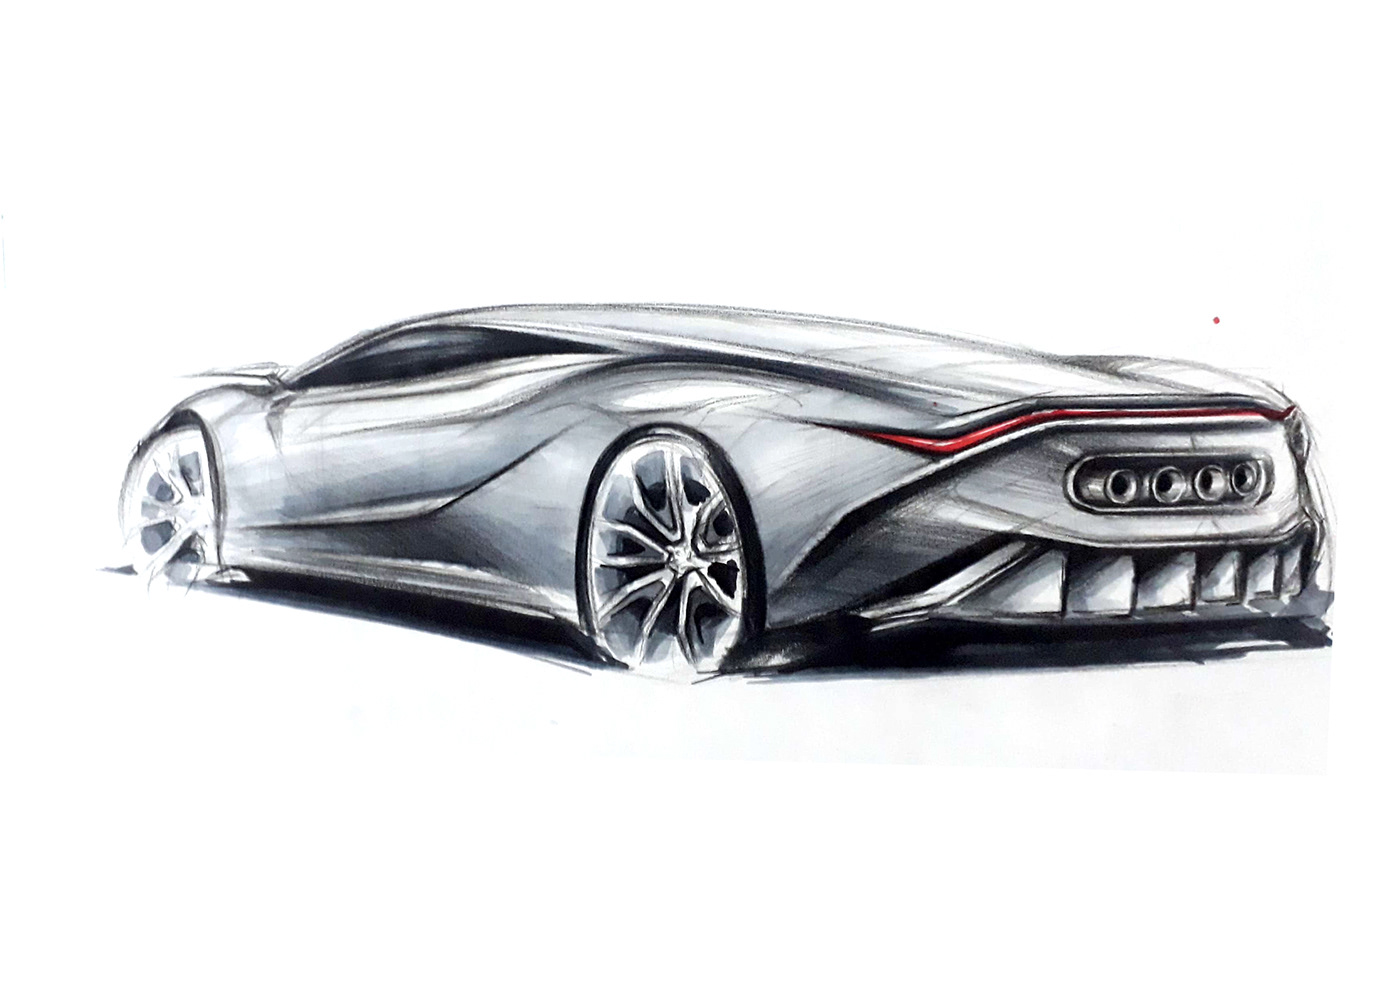 Automotive design car design car render car sketch freehand sketch pencil sketch Transportation Design